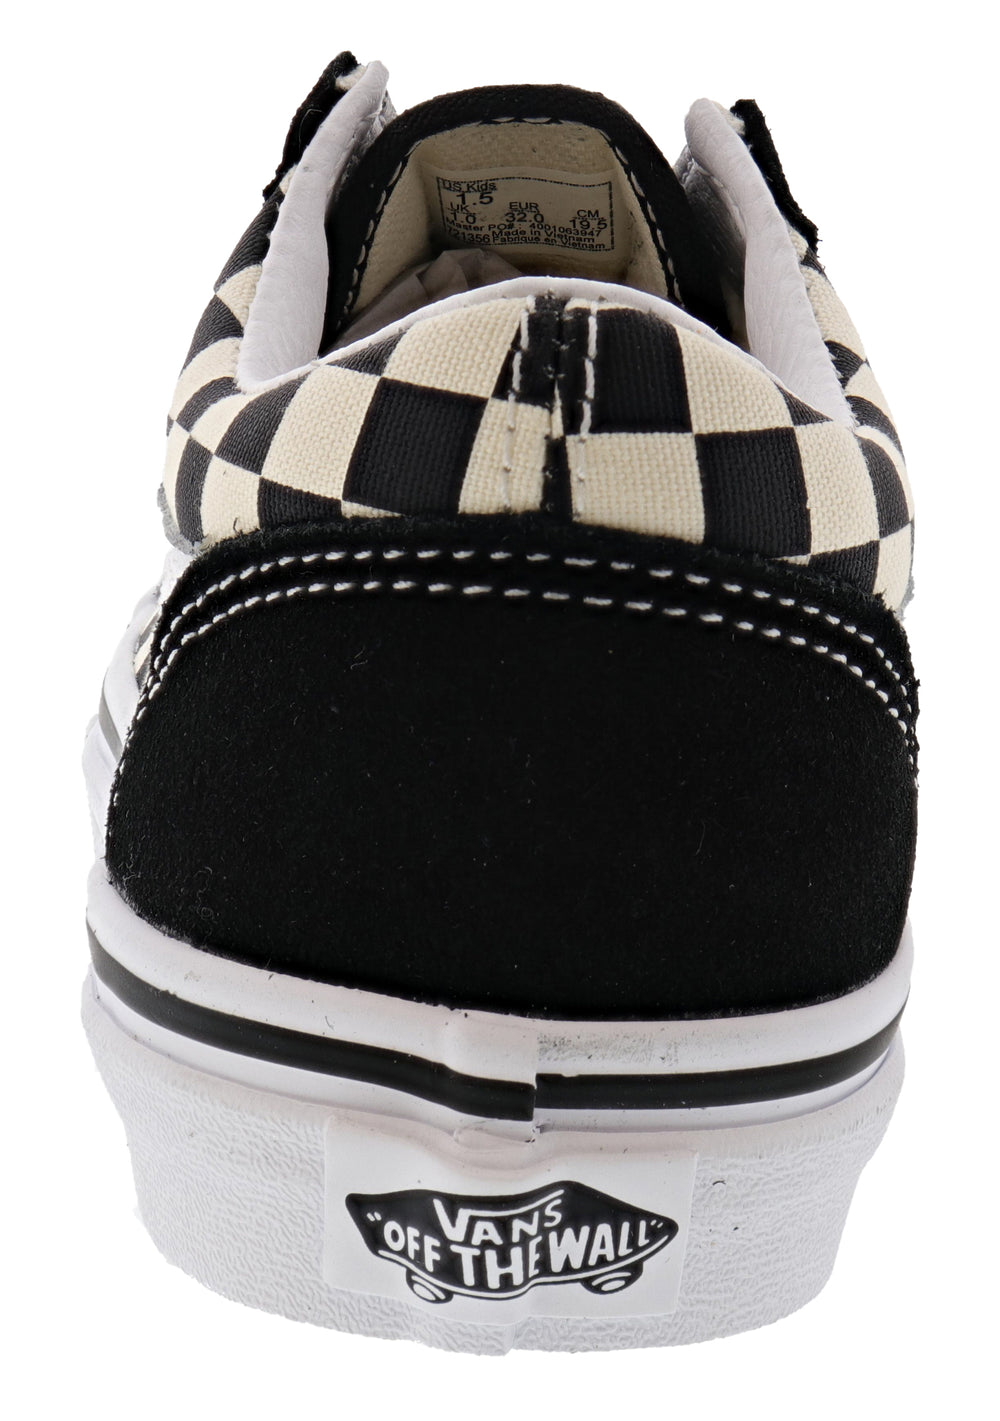 Vans Old Skool Black/White Checkered Shoes Size Men's 4.5 Women’s 6